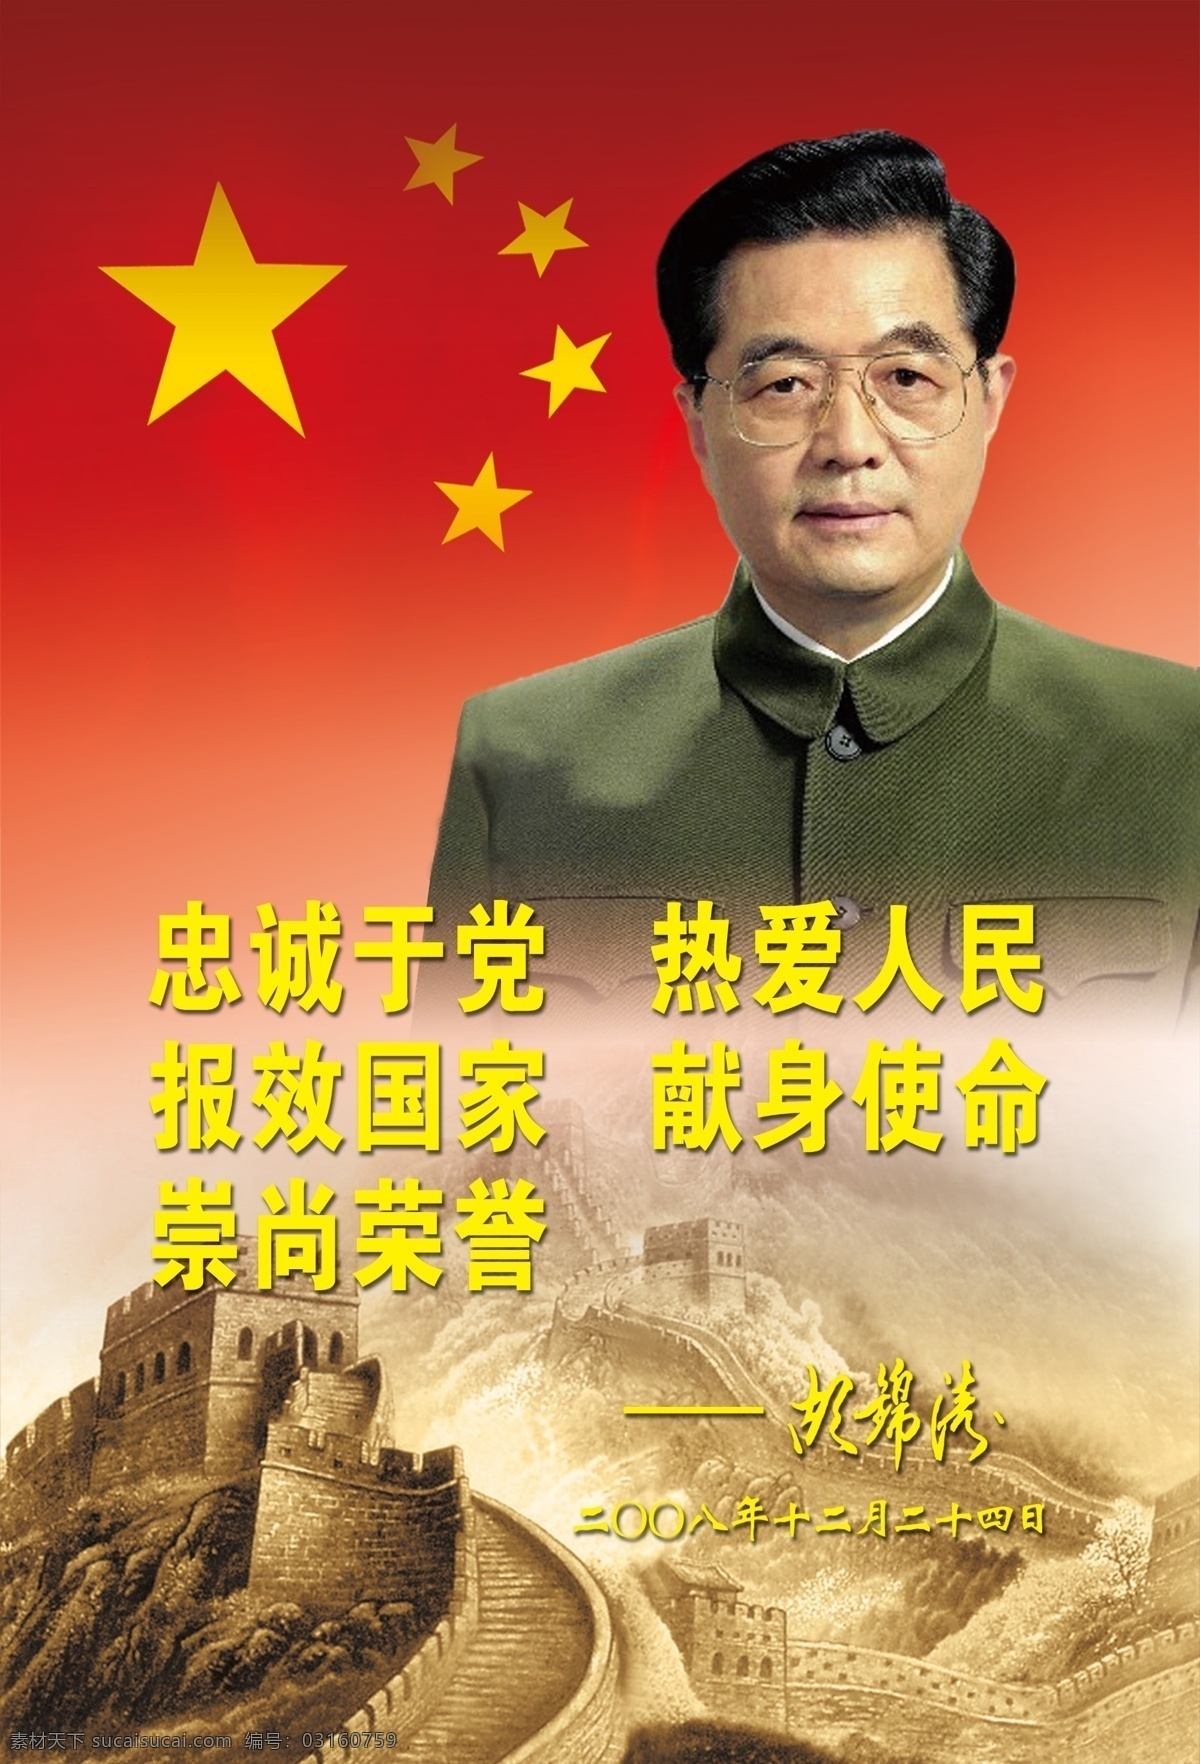 五代领导人 胡锦涛 领导人 党 部队 军队